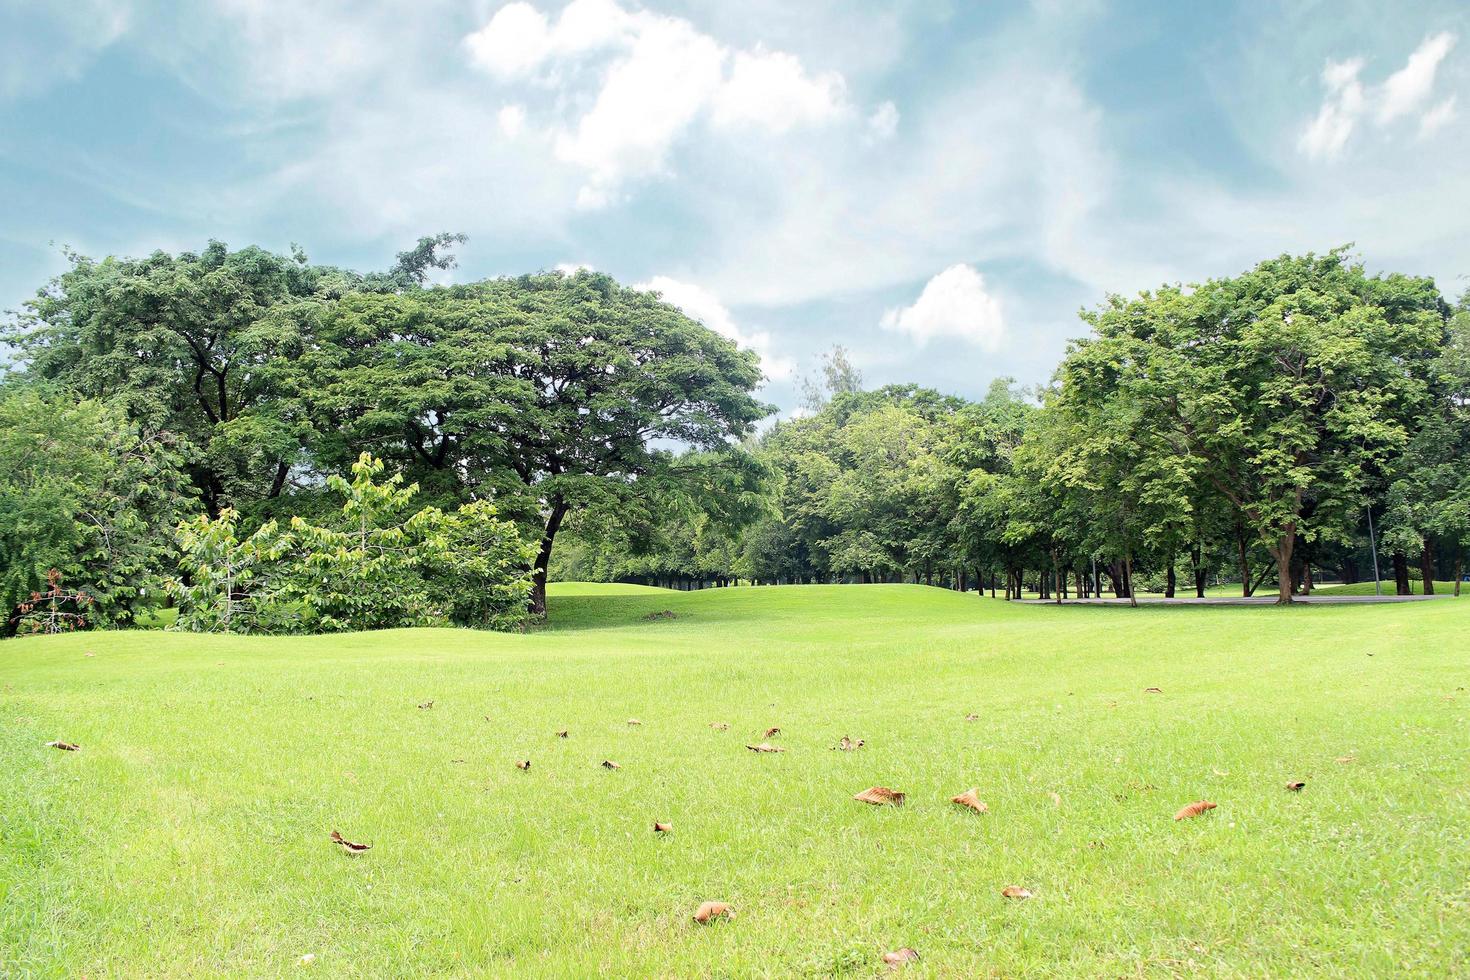 césped verde y árboles en un parque foto